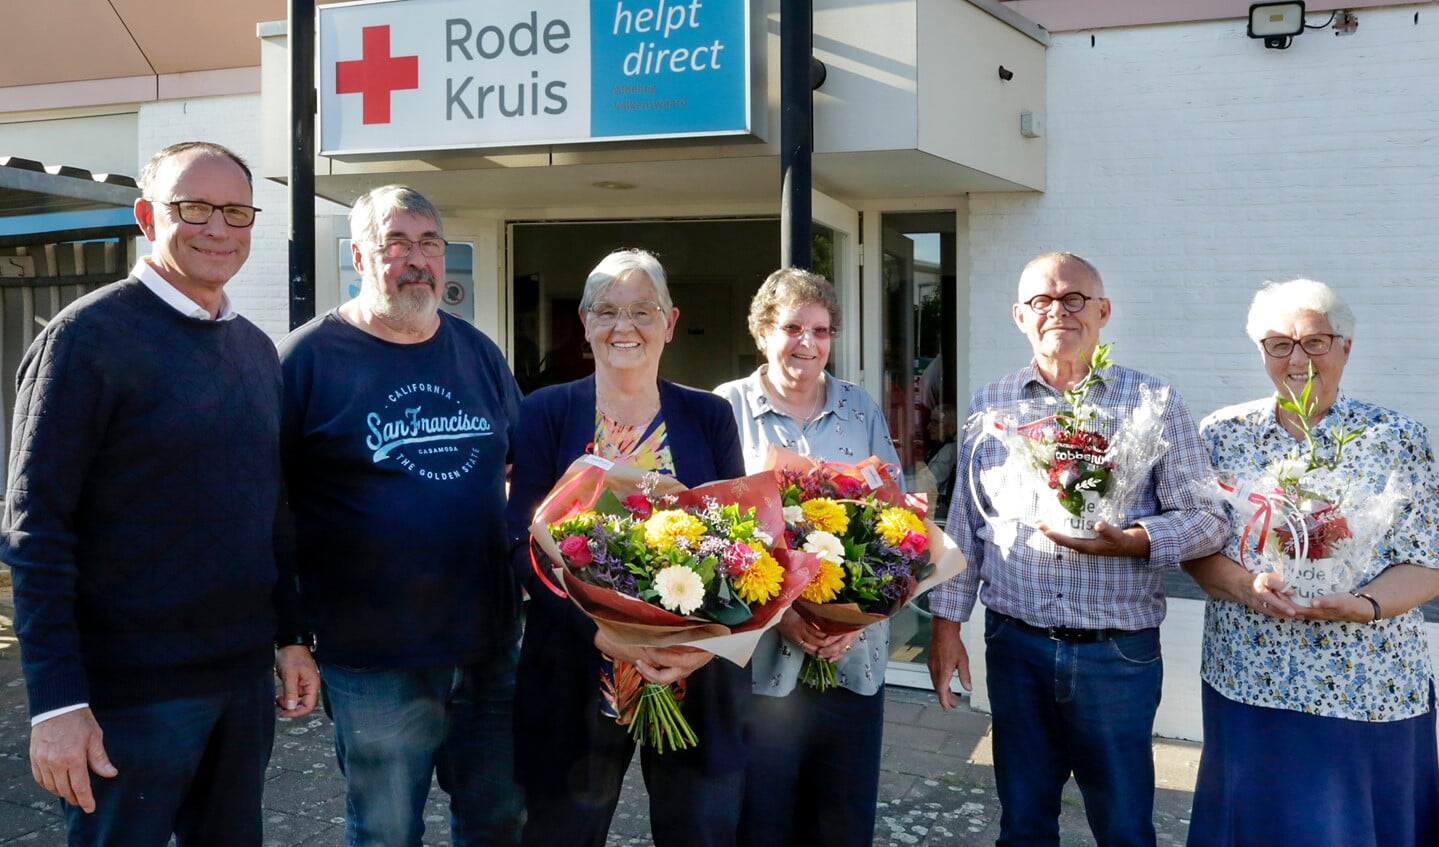 Theo Geldens met jubilarissen Hans Tholen, Gerry Hoeks, Rini Kanters, Gerard Staals en Diny Bevelander. (Foto: Jurgen van Hoof)